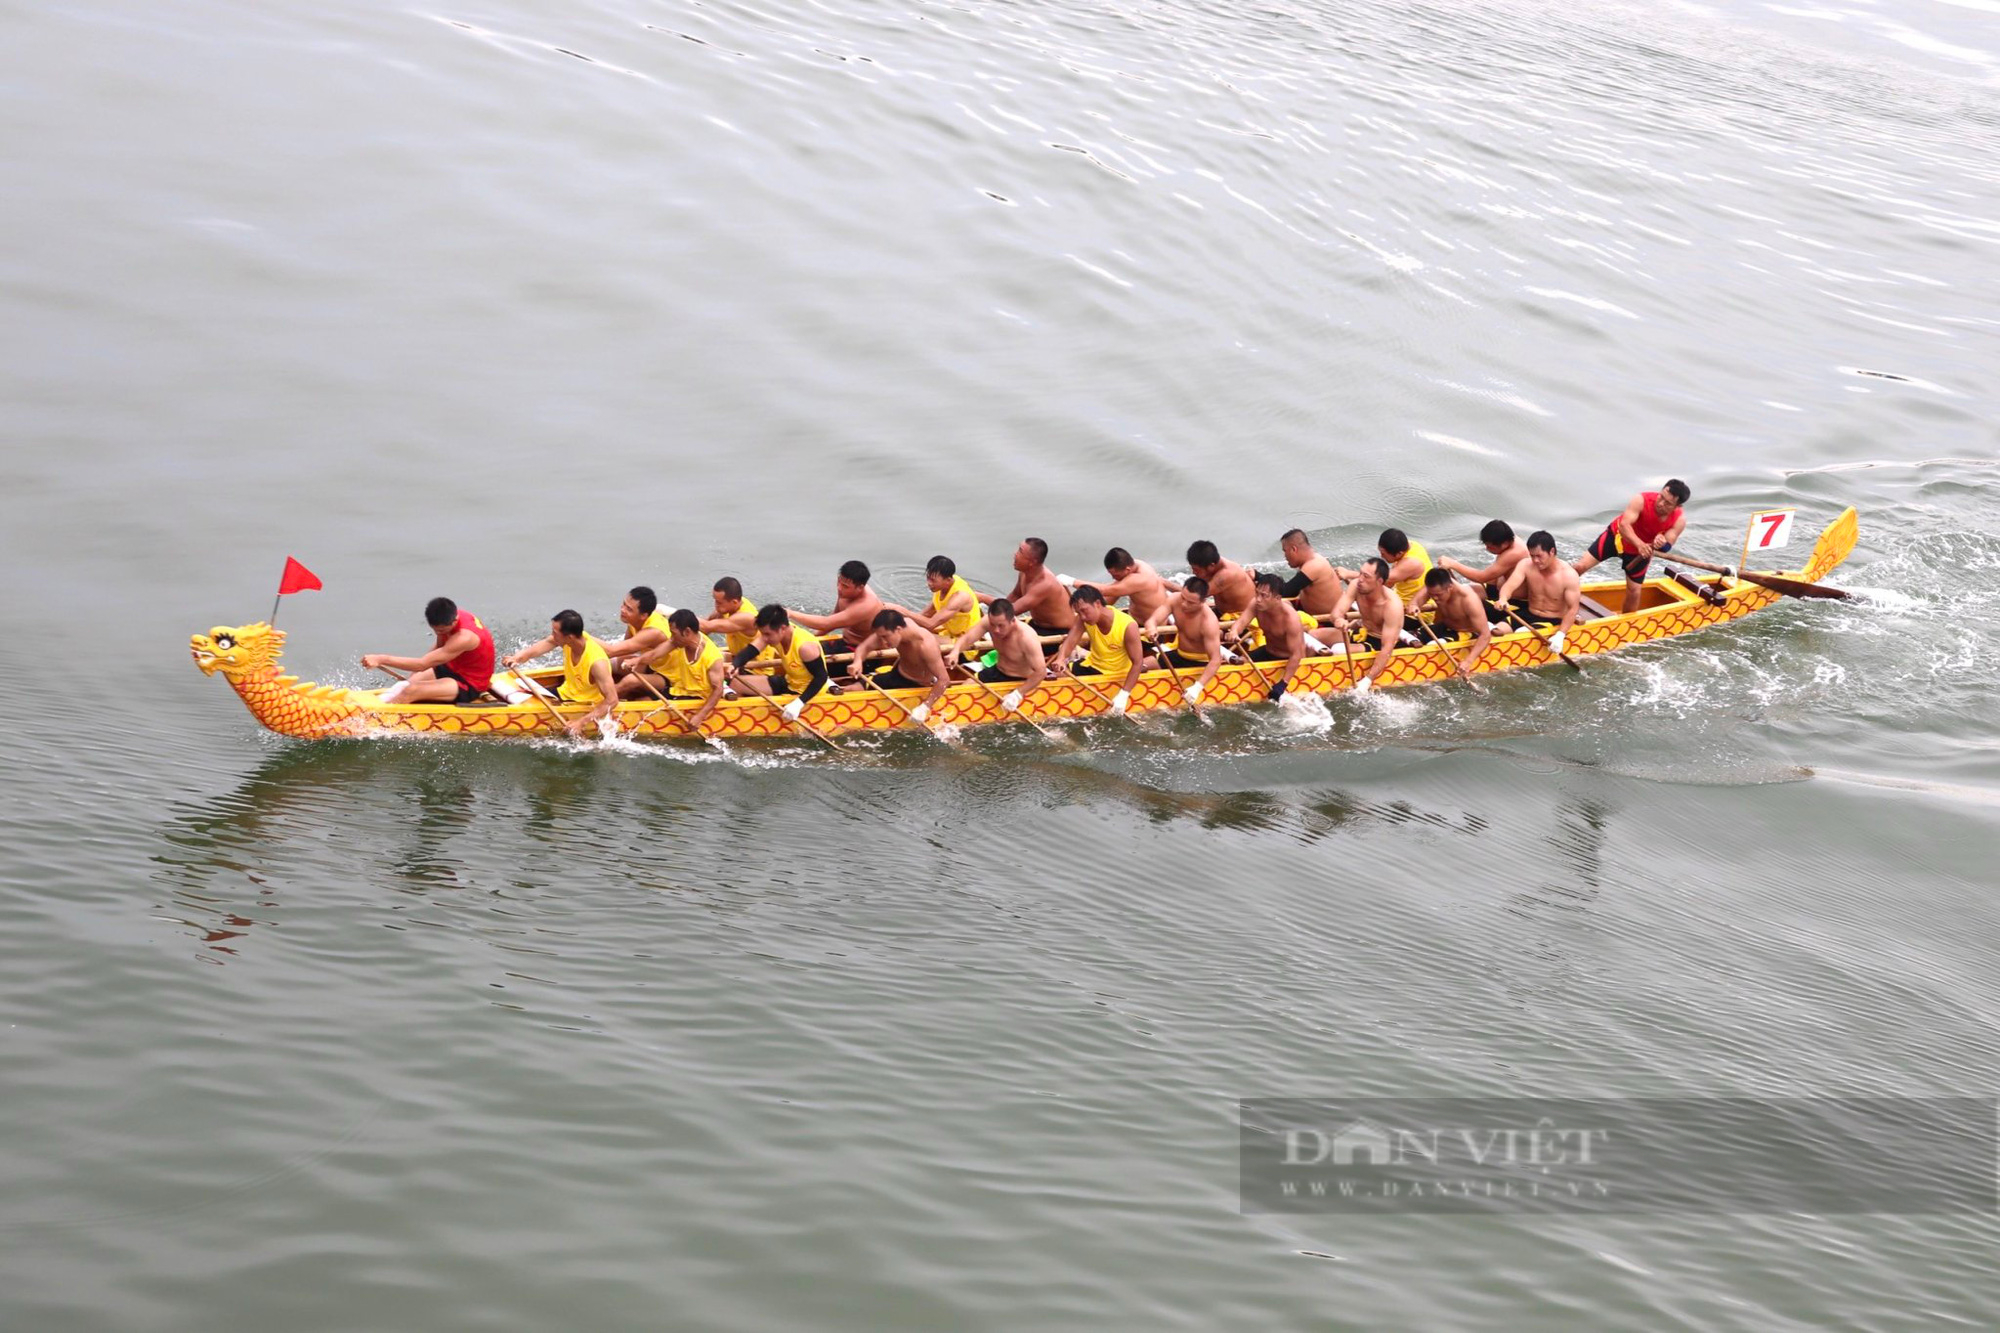 Hàng nghìn người nô nức đến xem lễ hội đua thuyền trên sông Nhật Lệ  - Ảnh 4.